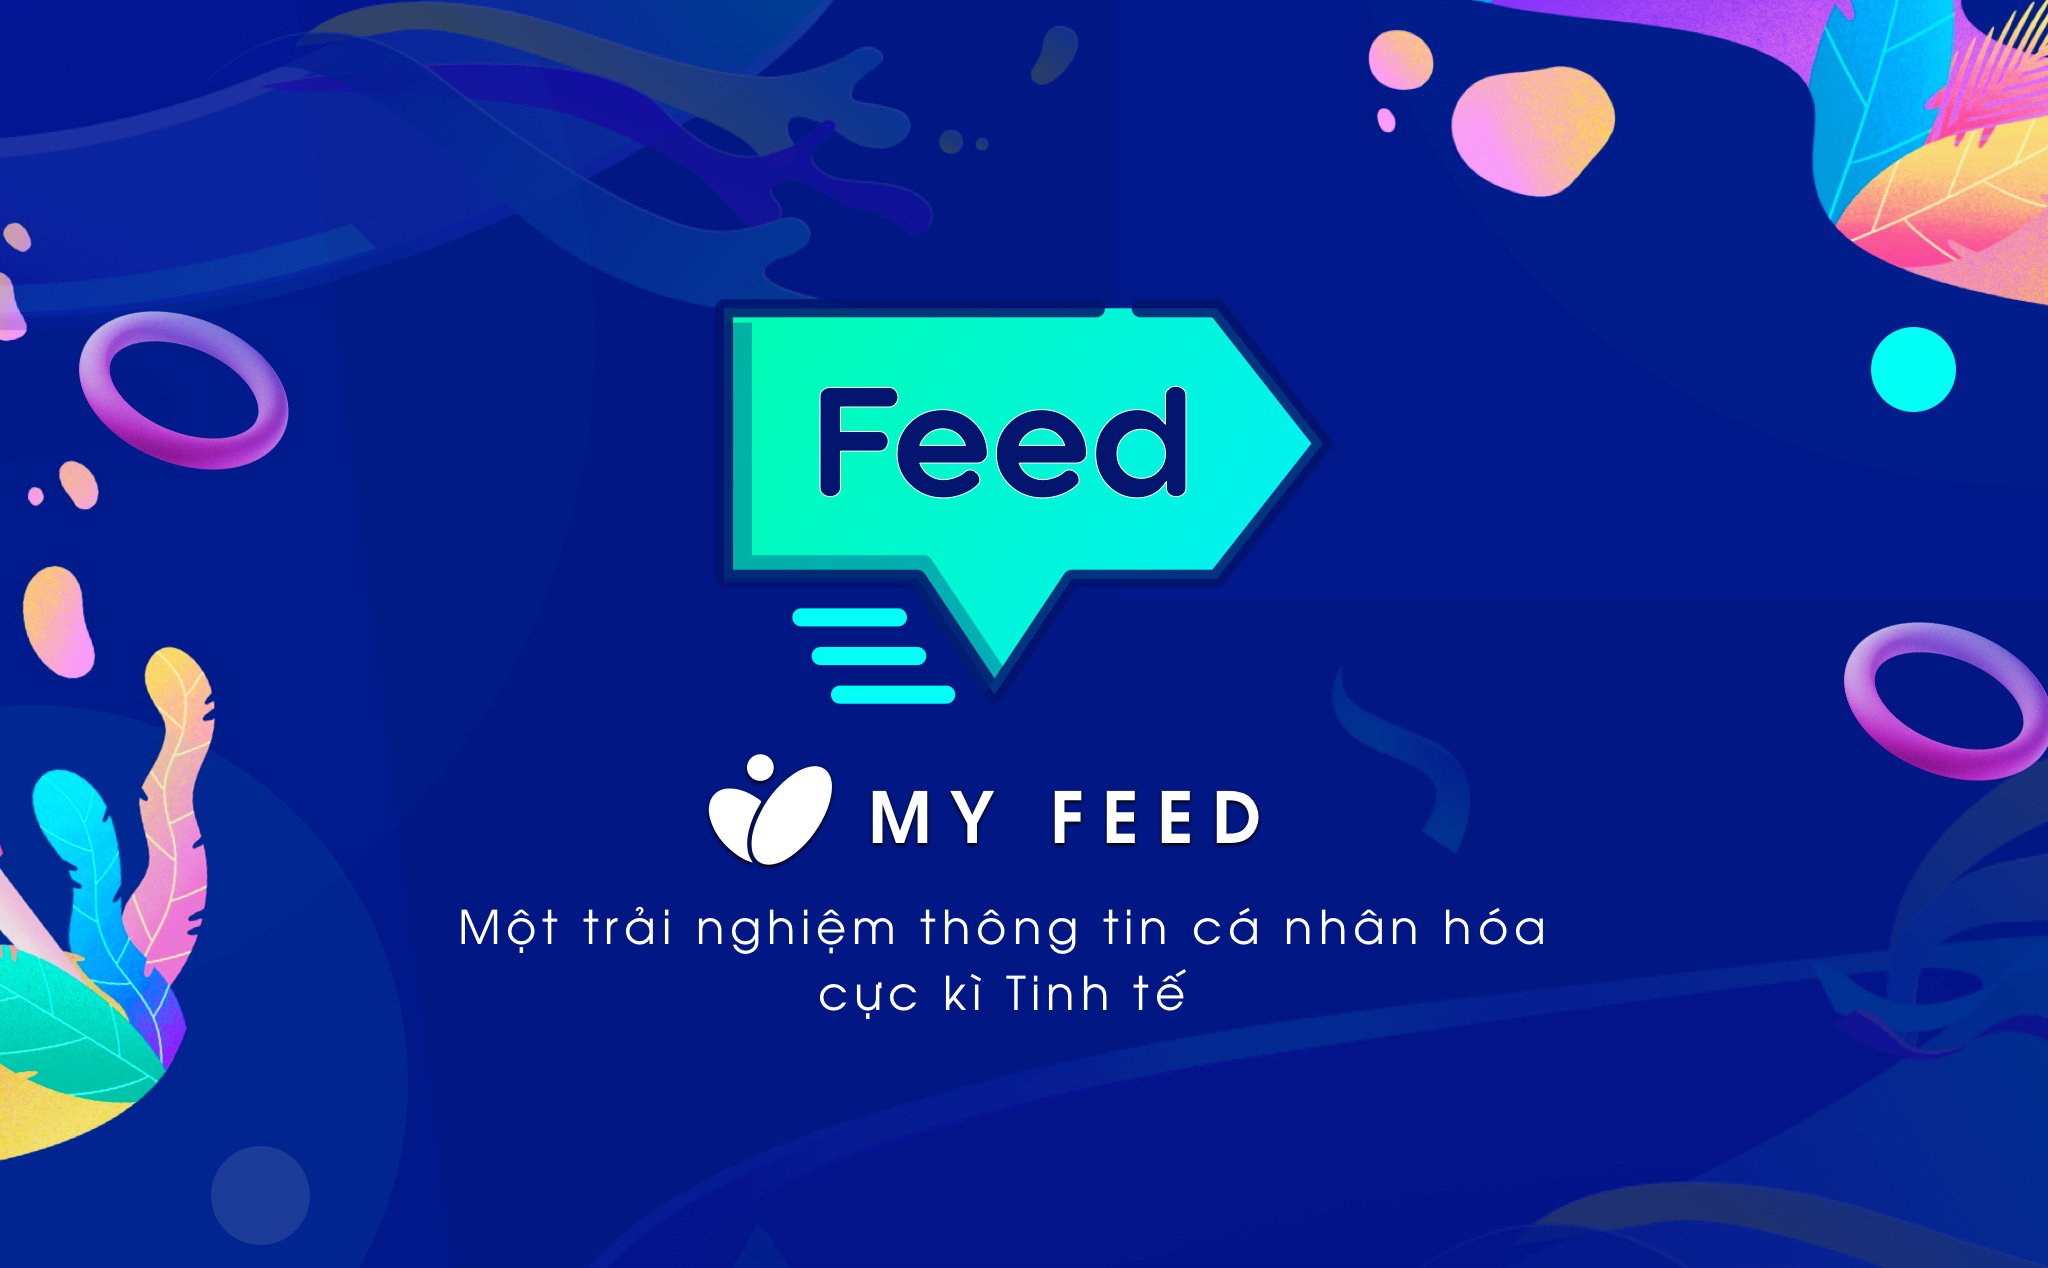 Chức năng My Feed đã ra mắt cho cả web và app, anh em dùng thử nhé